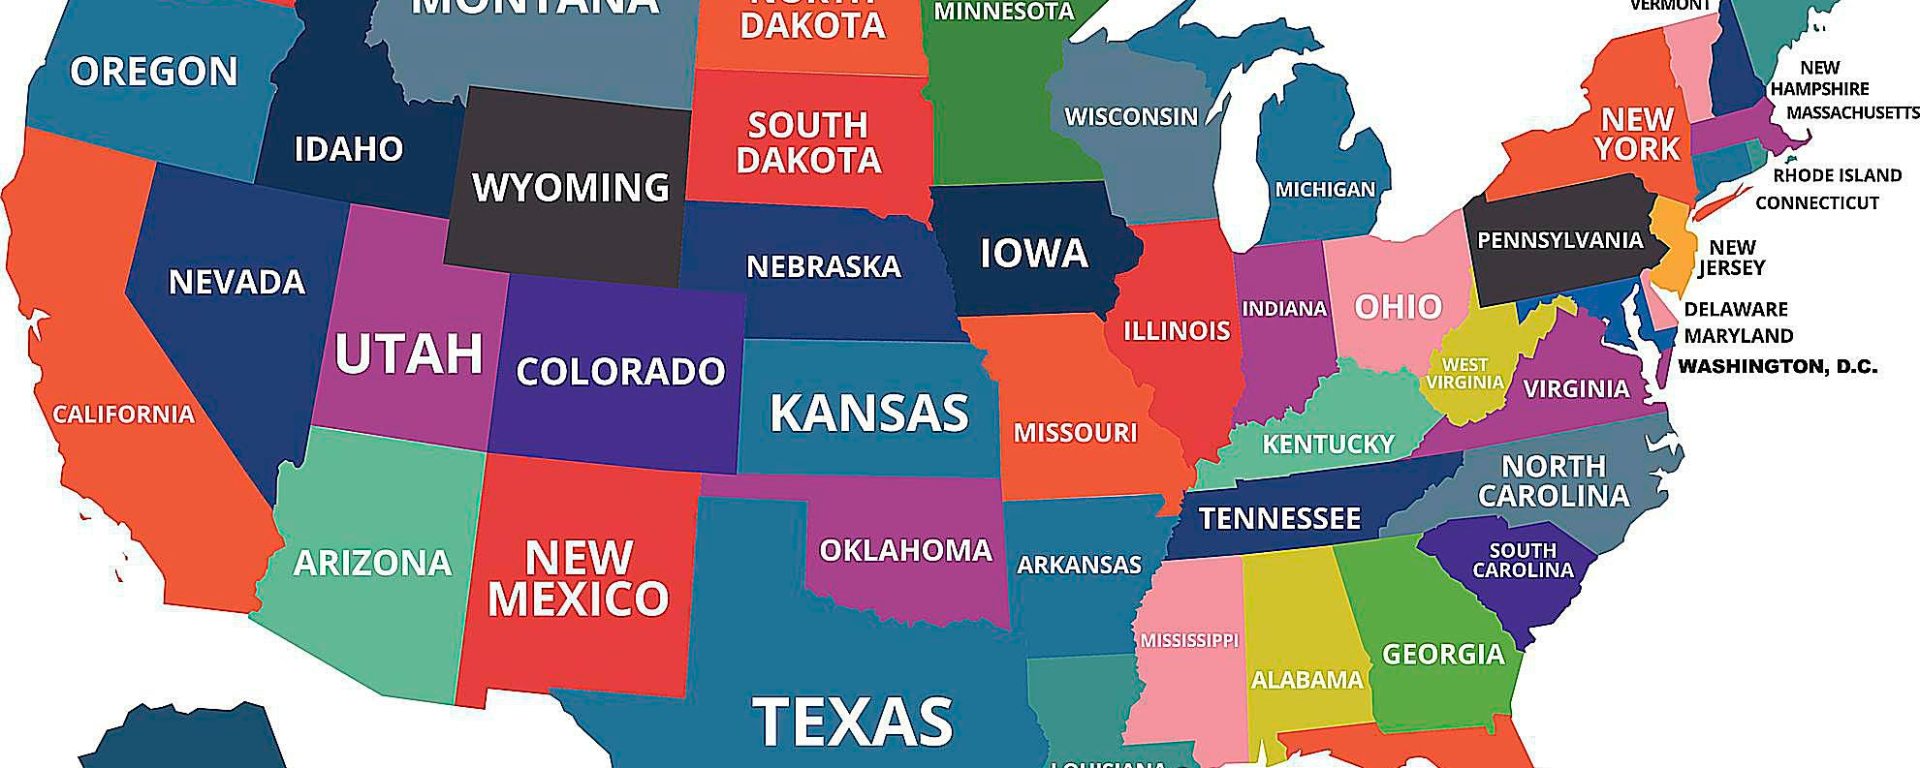 كم ولاية توجد في امريكا